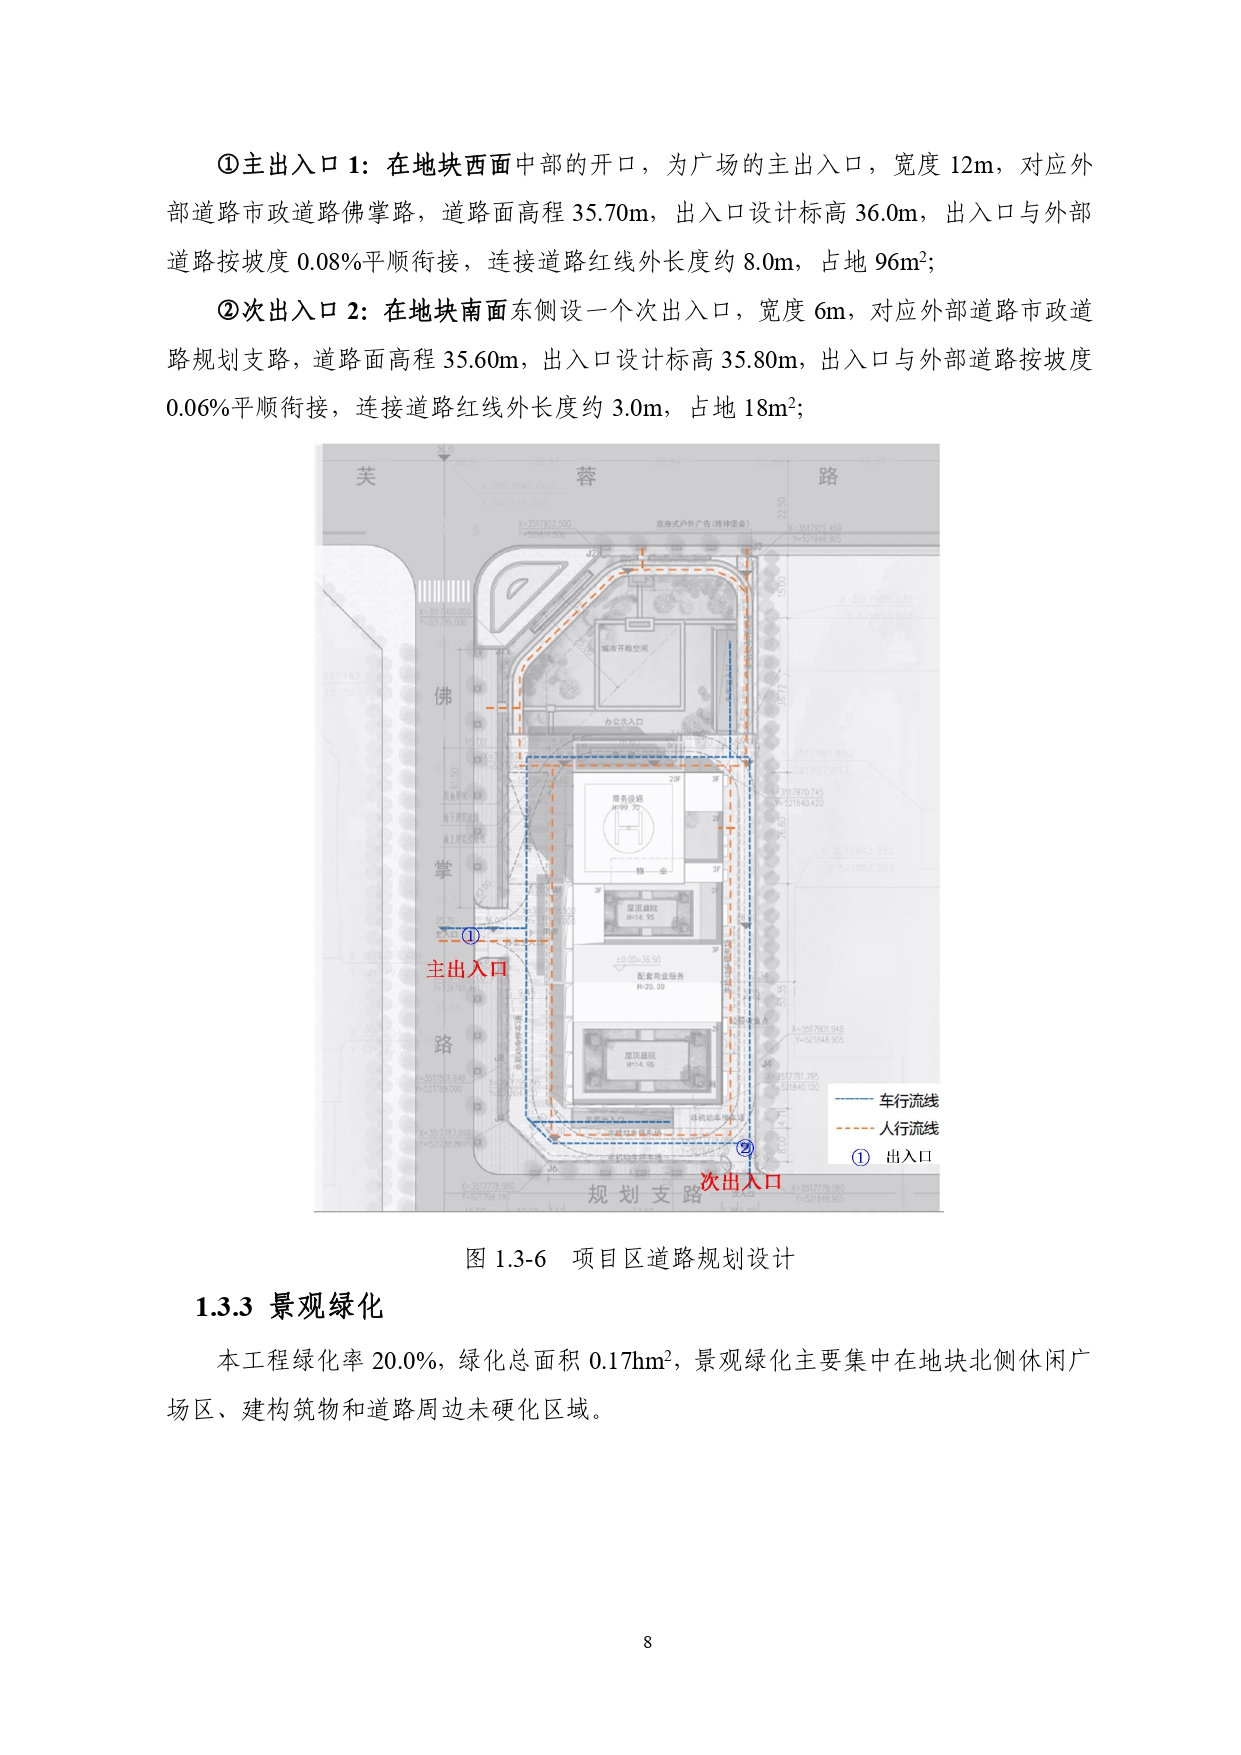 01-中果广场大厦项目水土保持报告表-打印_page-0019.jpg